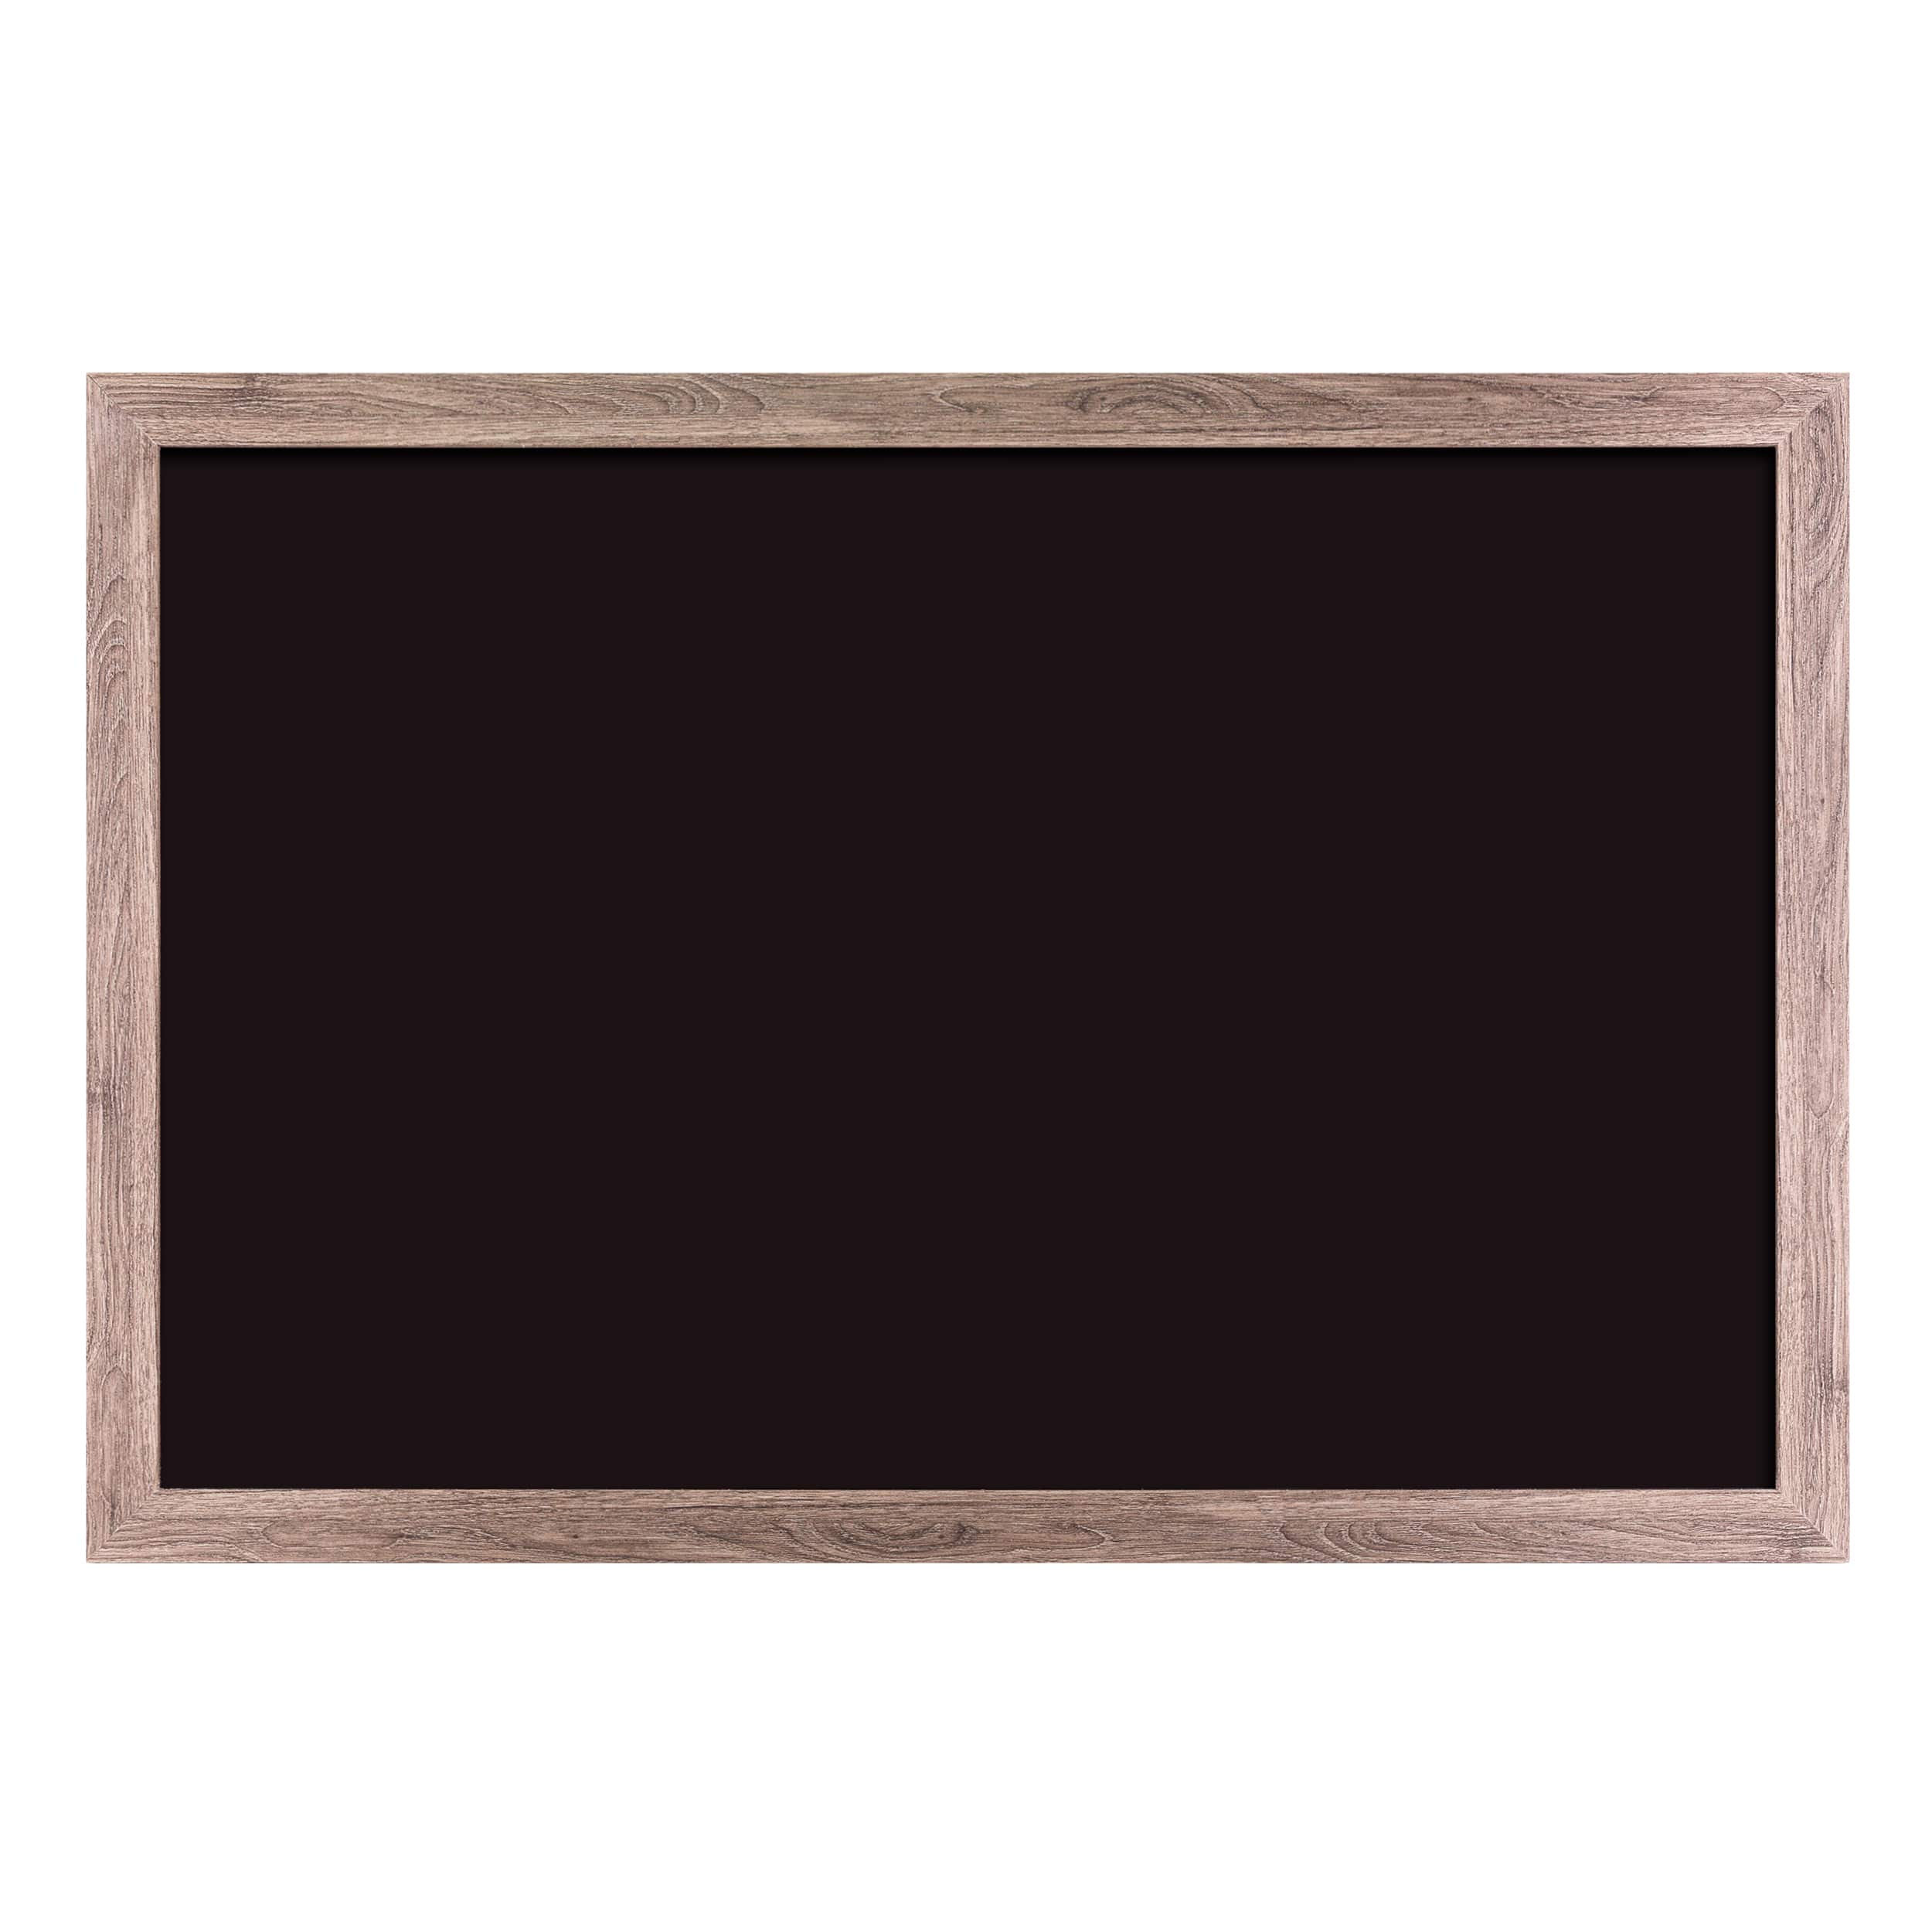 U Brands&#x2122; 36&#x27;&#x27; x 24&#x27;&#x27; Rustic Wood MDF Framed Chalkboard